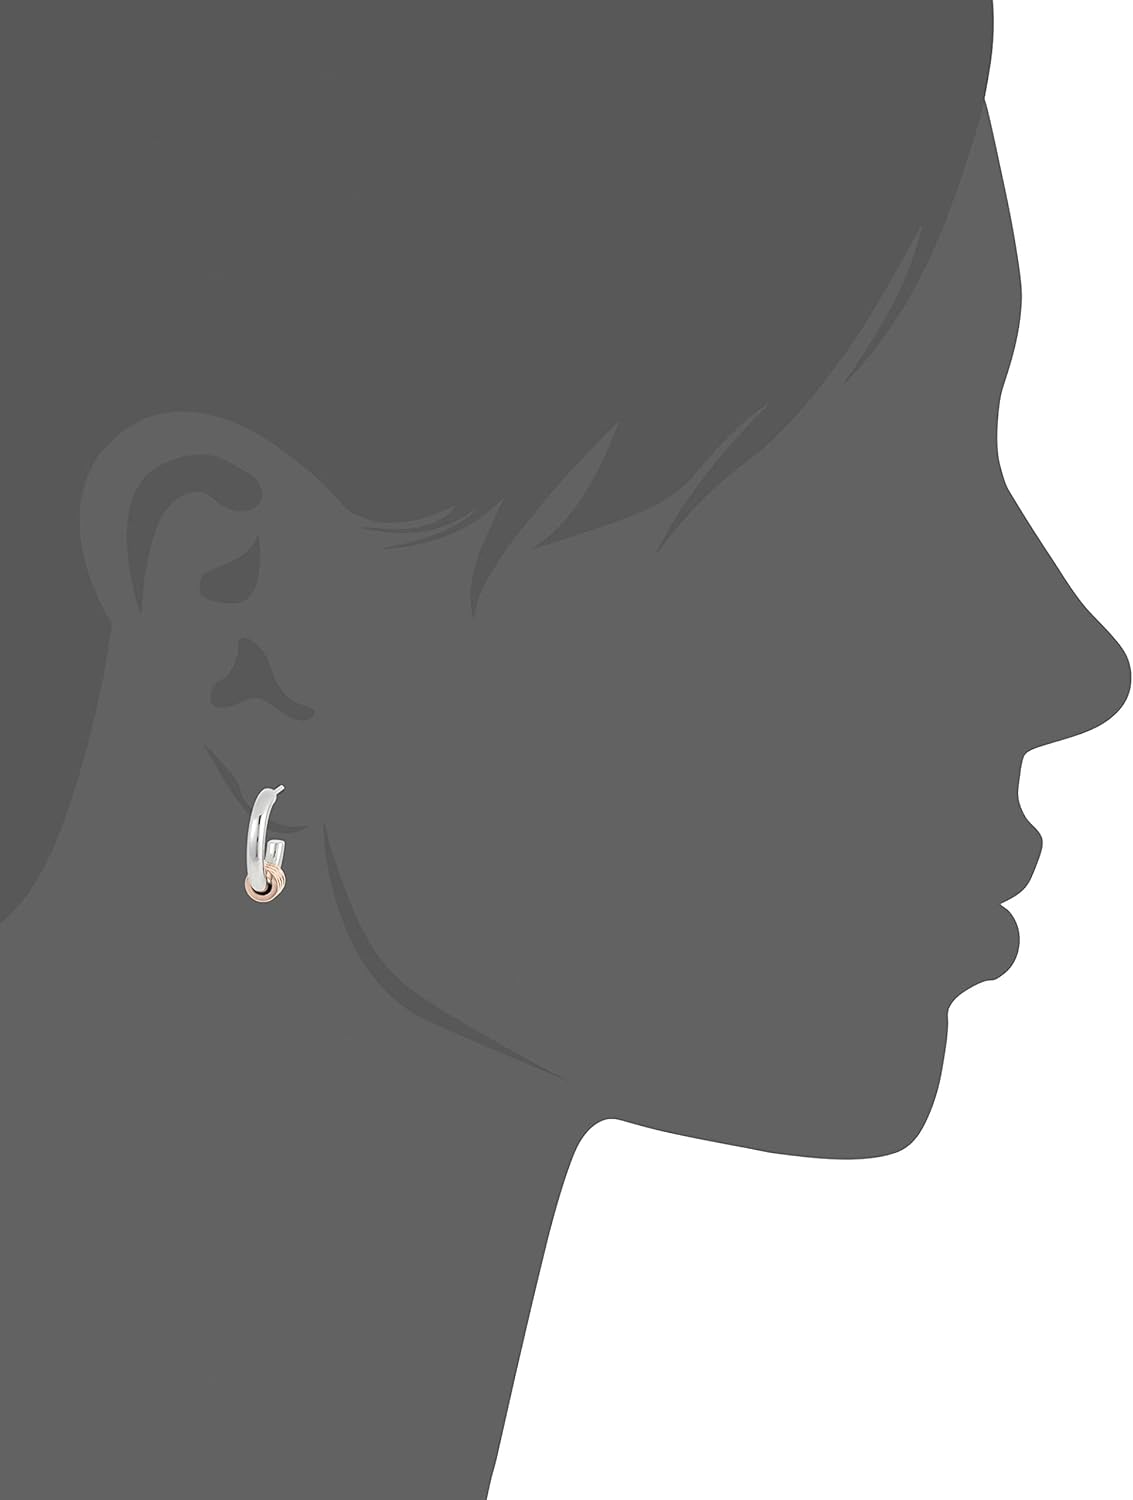 Tommy Hilfiger Jewelry Women Two Tone Stainless Steel Stud Earrings - 2780505